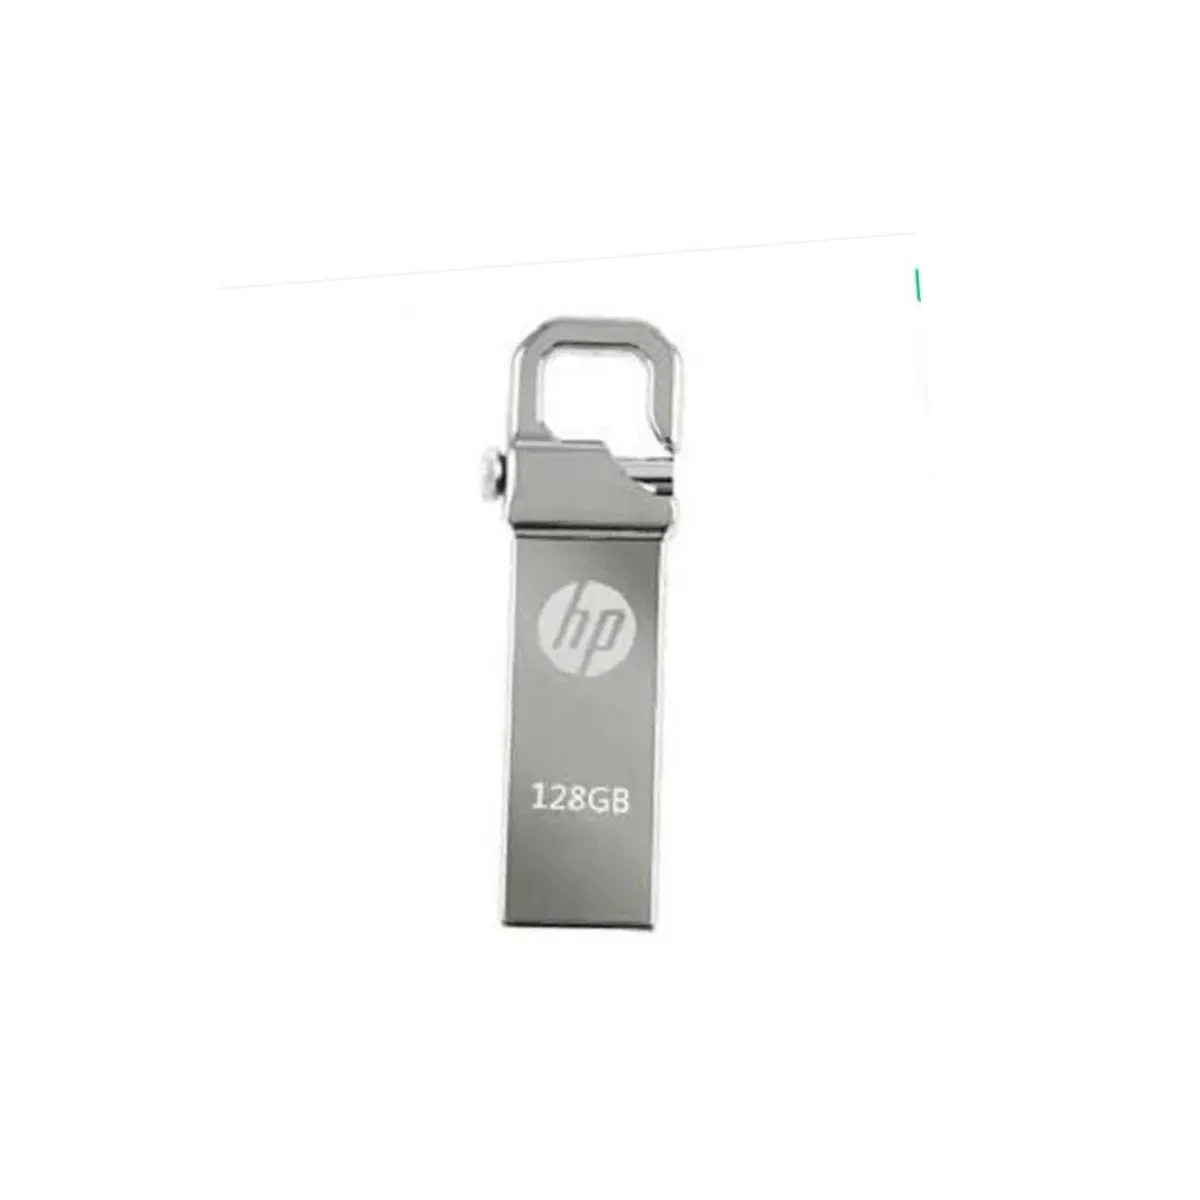 HP v250w 128 GB USB 3.1 Pen Drive